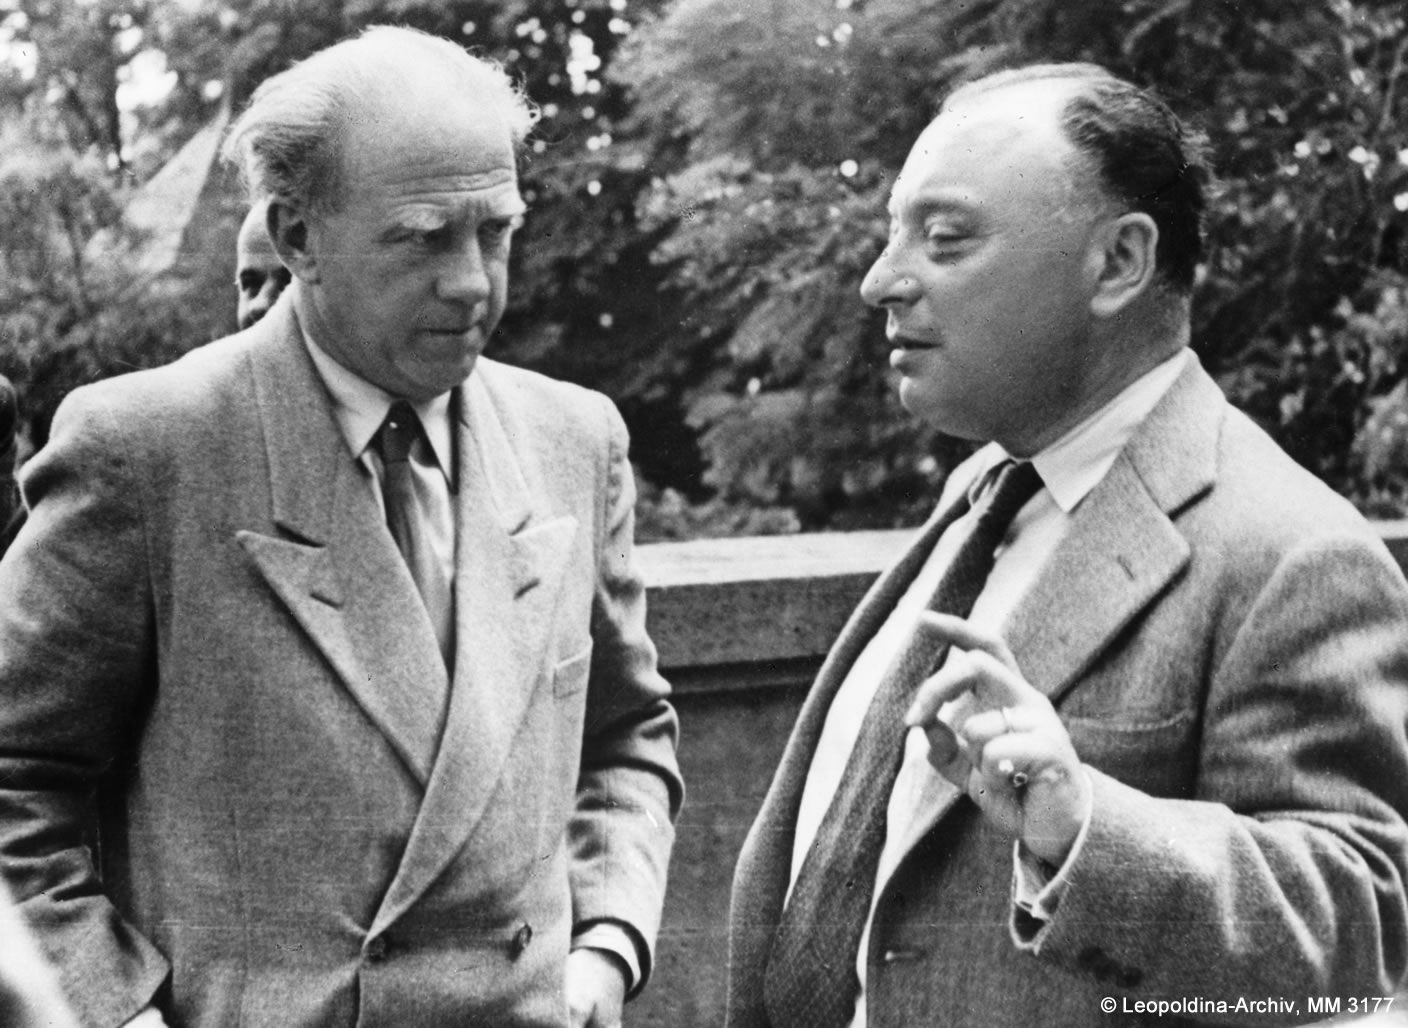 Wolfgang Pauli talks to Werner Heisenberg